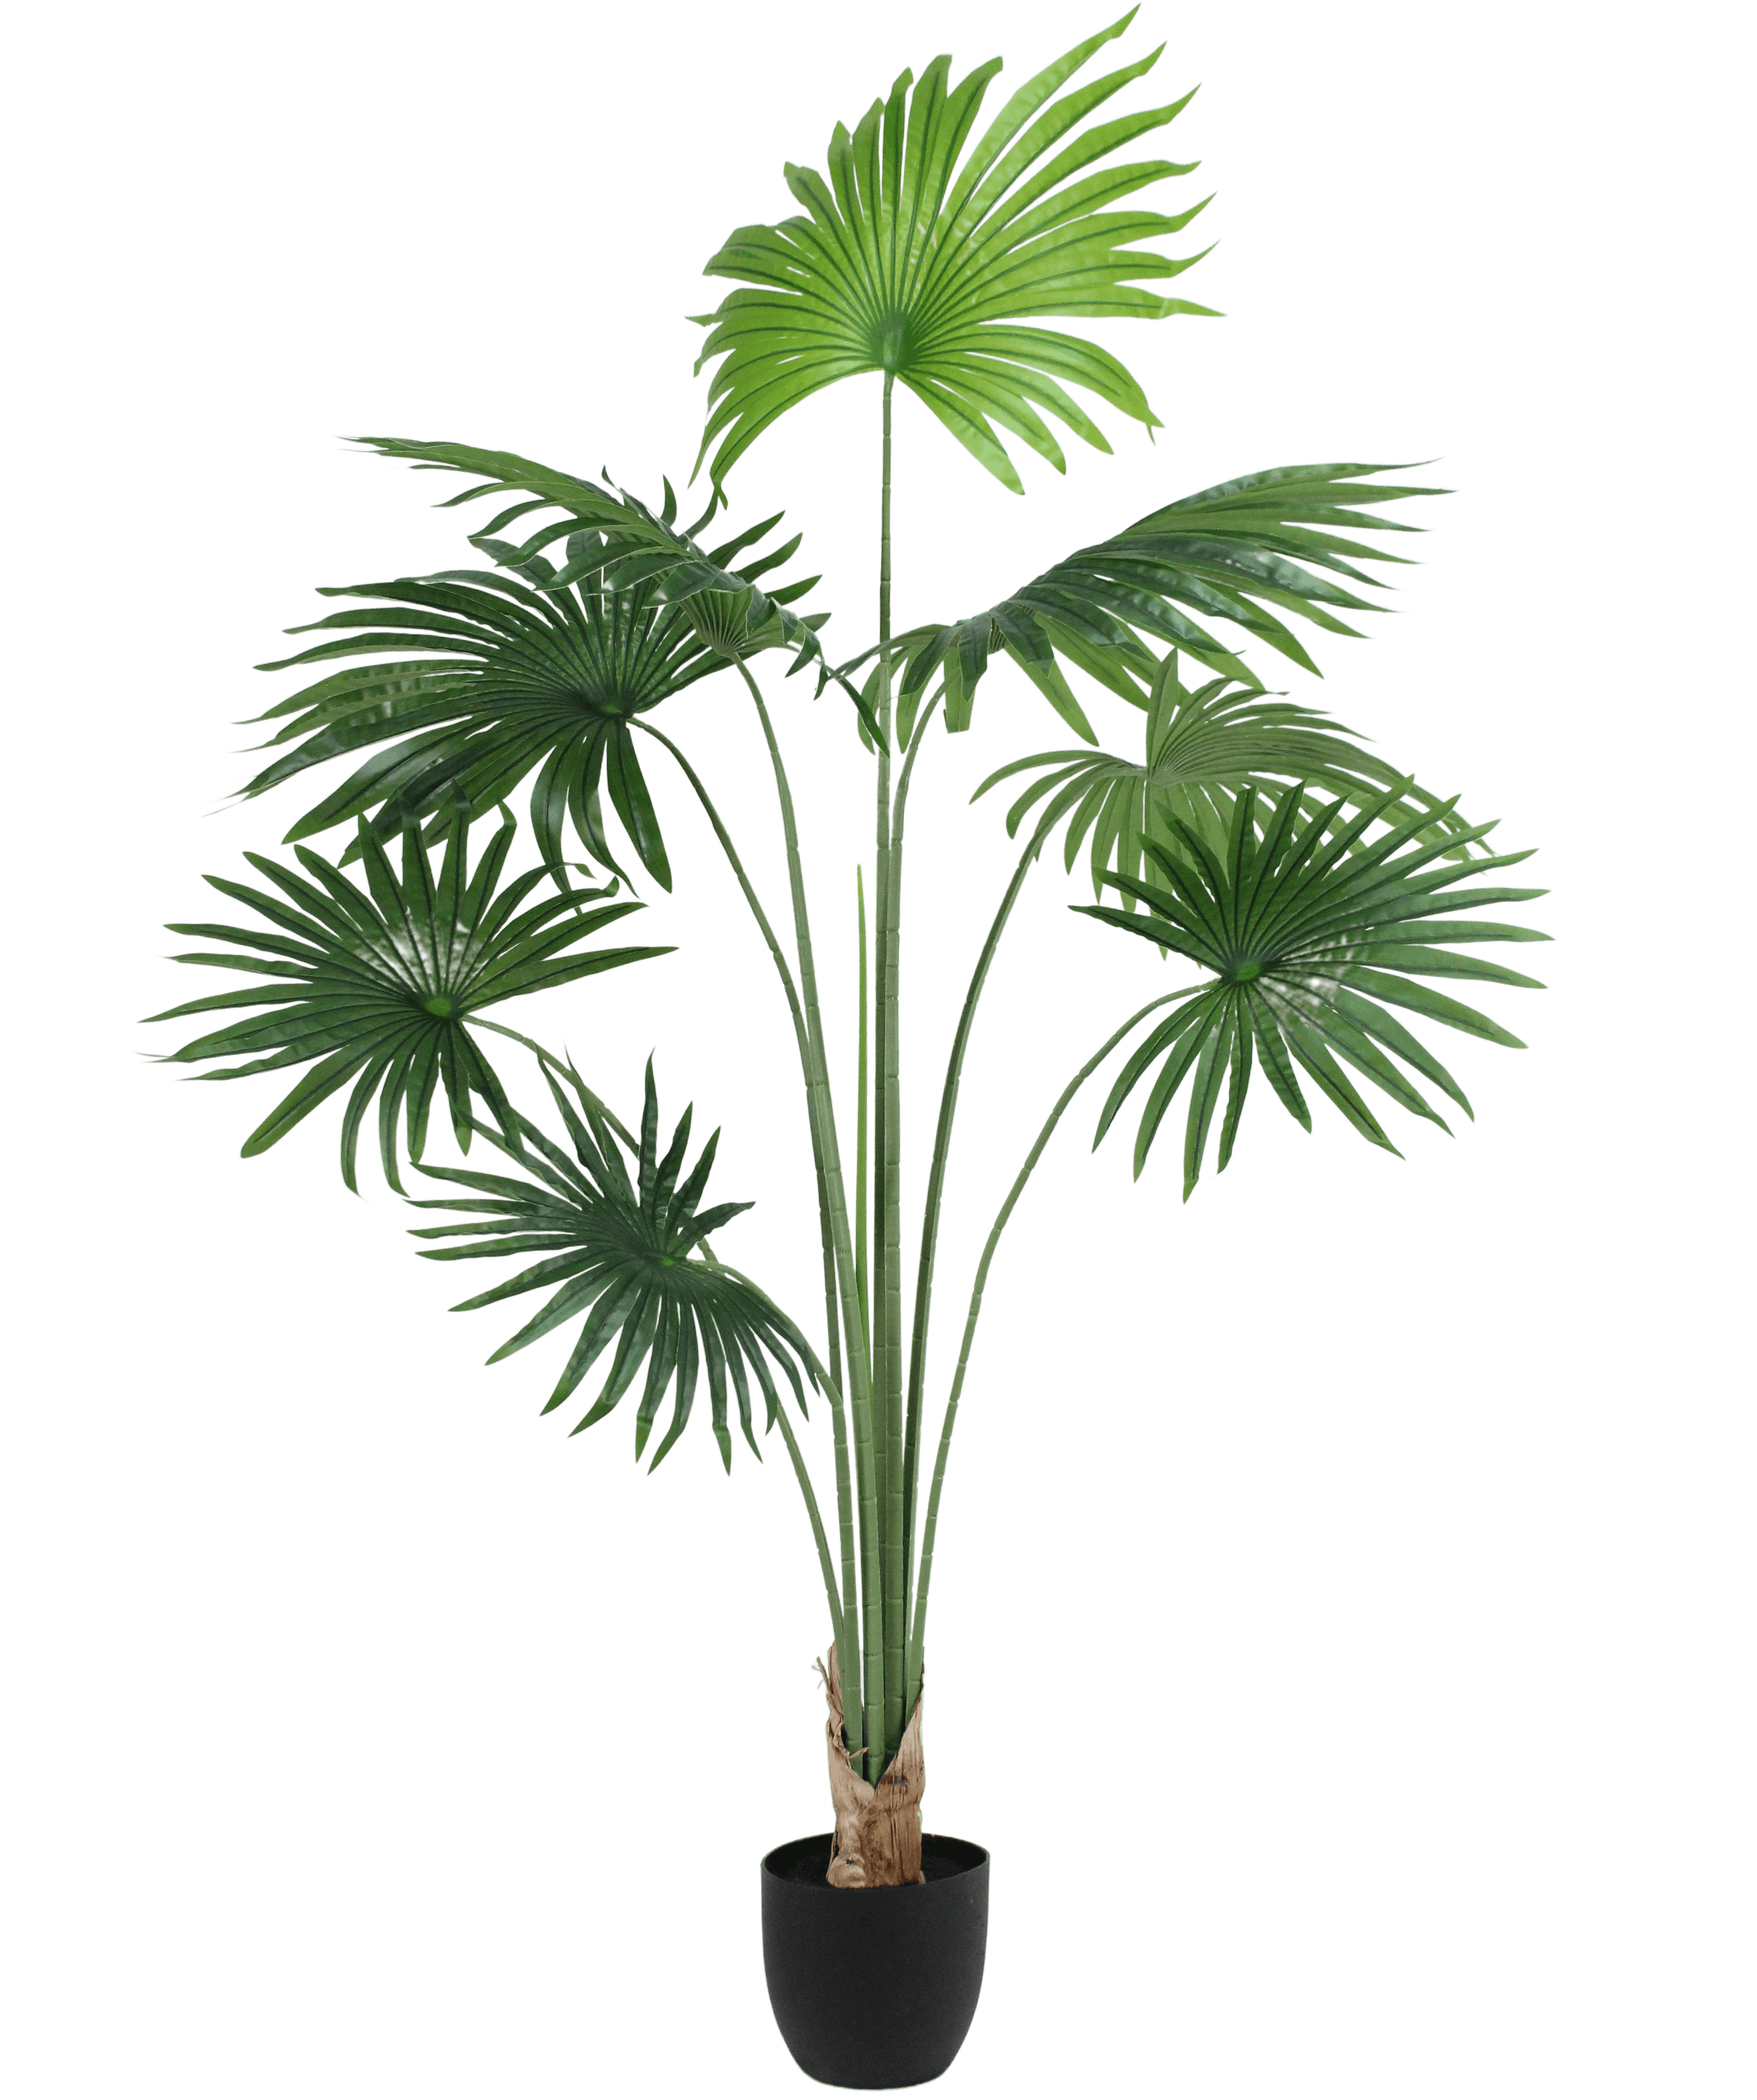 Artificial livingston fan palm